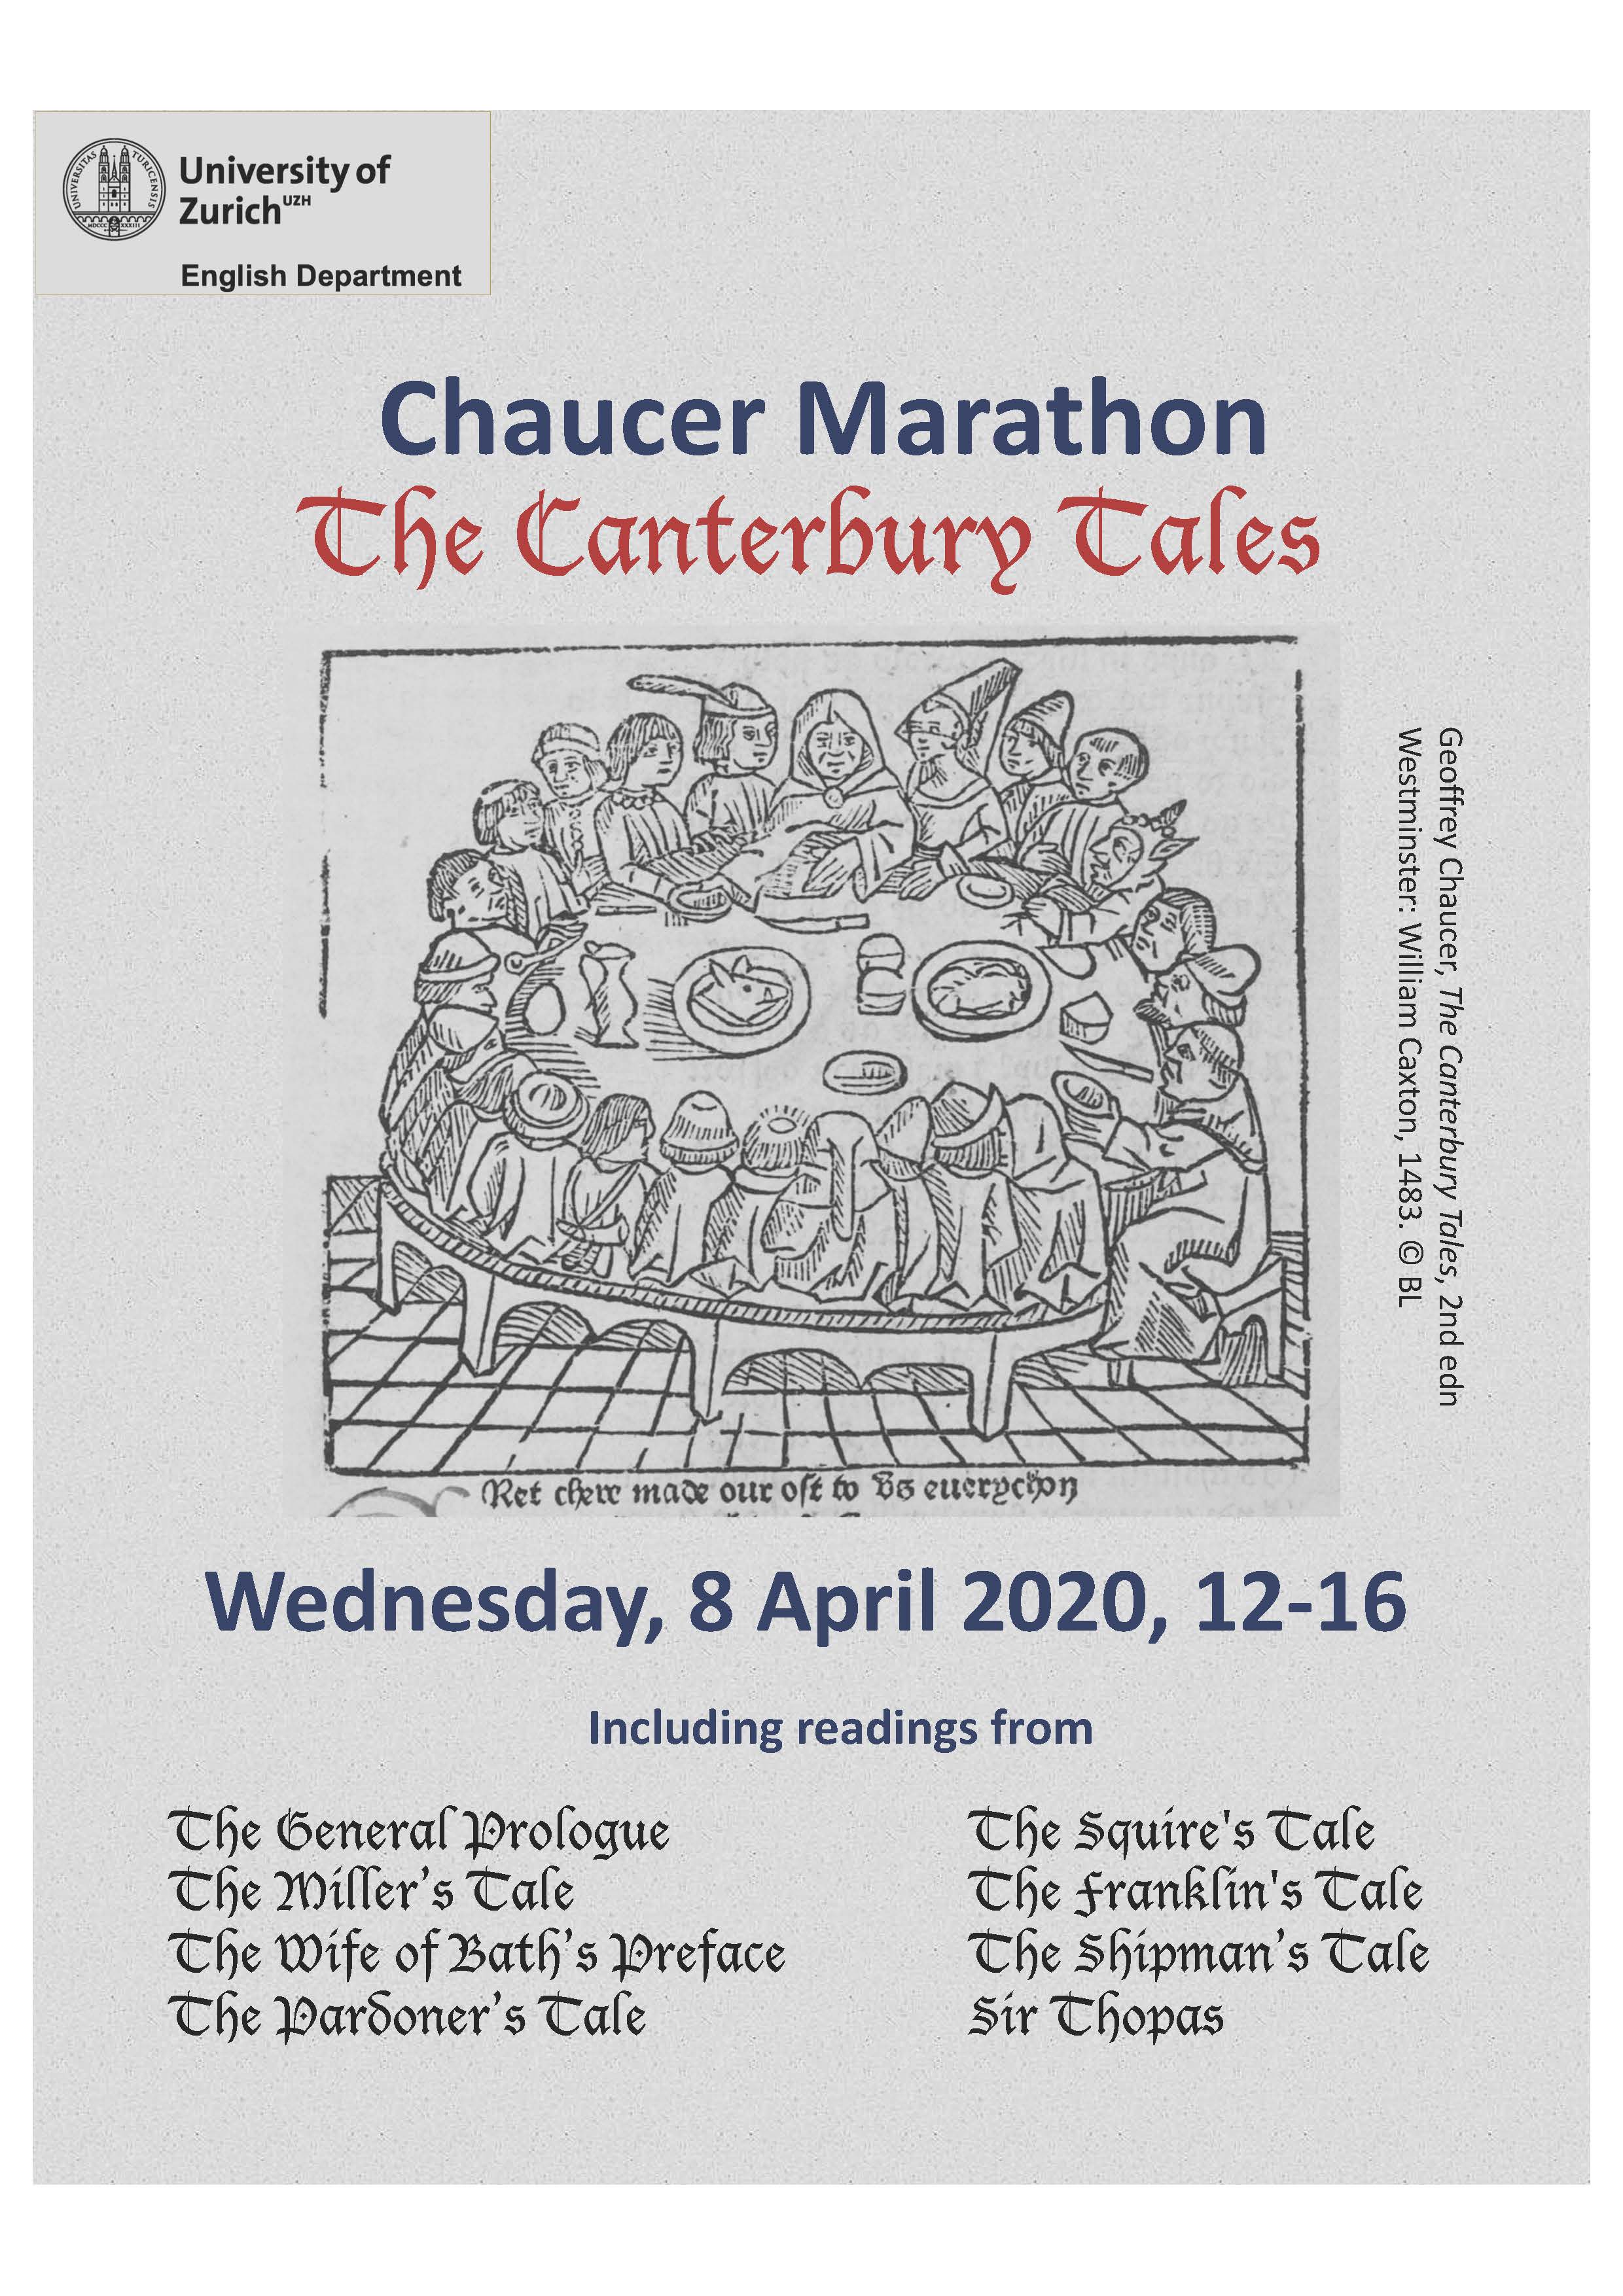 Chaucer Marathon 2020